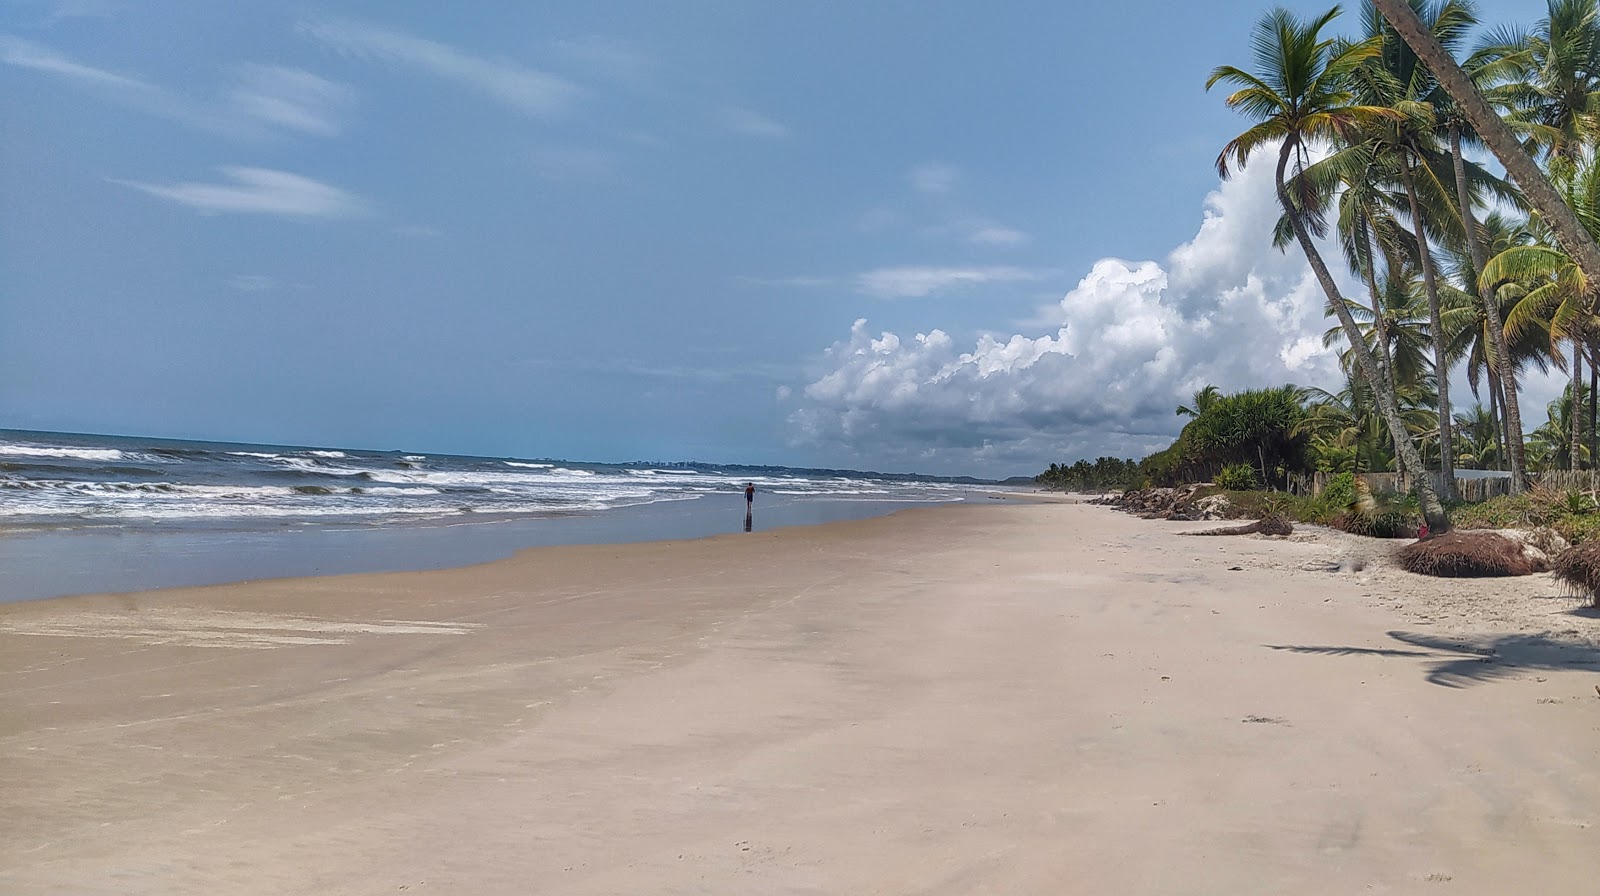 Foto di Praia da Realeza Bahia con una superficie del sabbia fine e luminosa